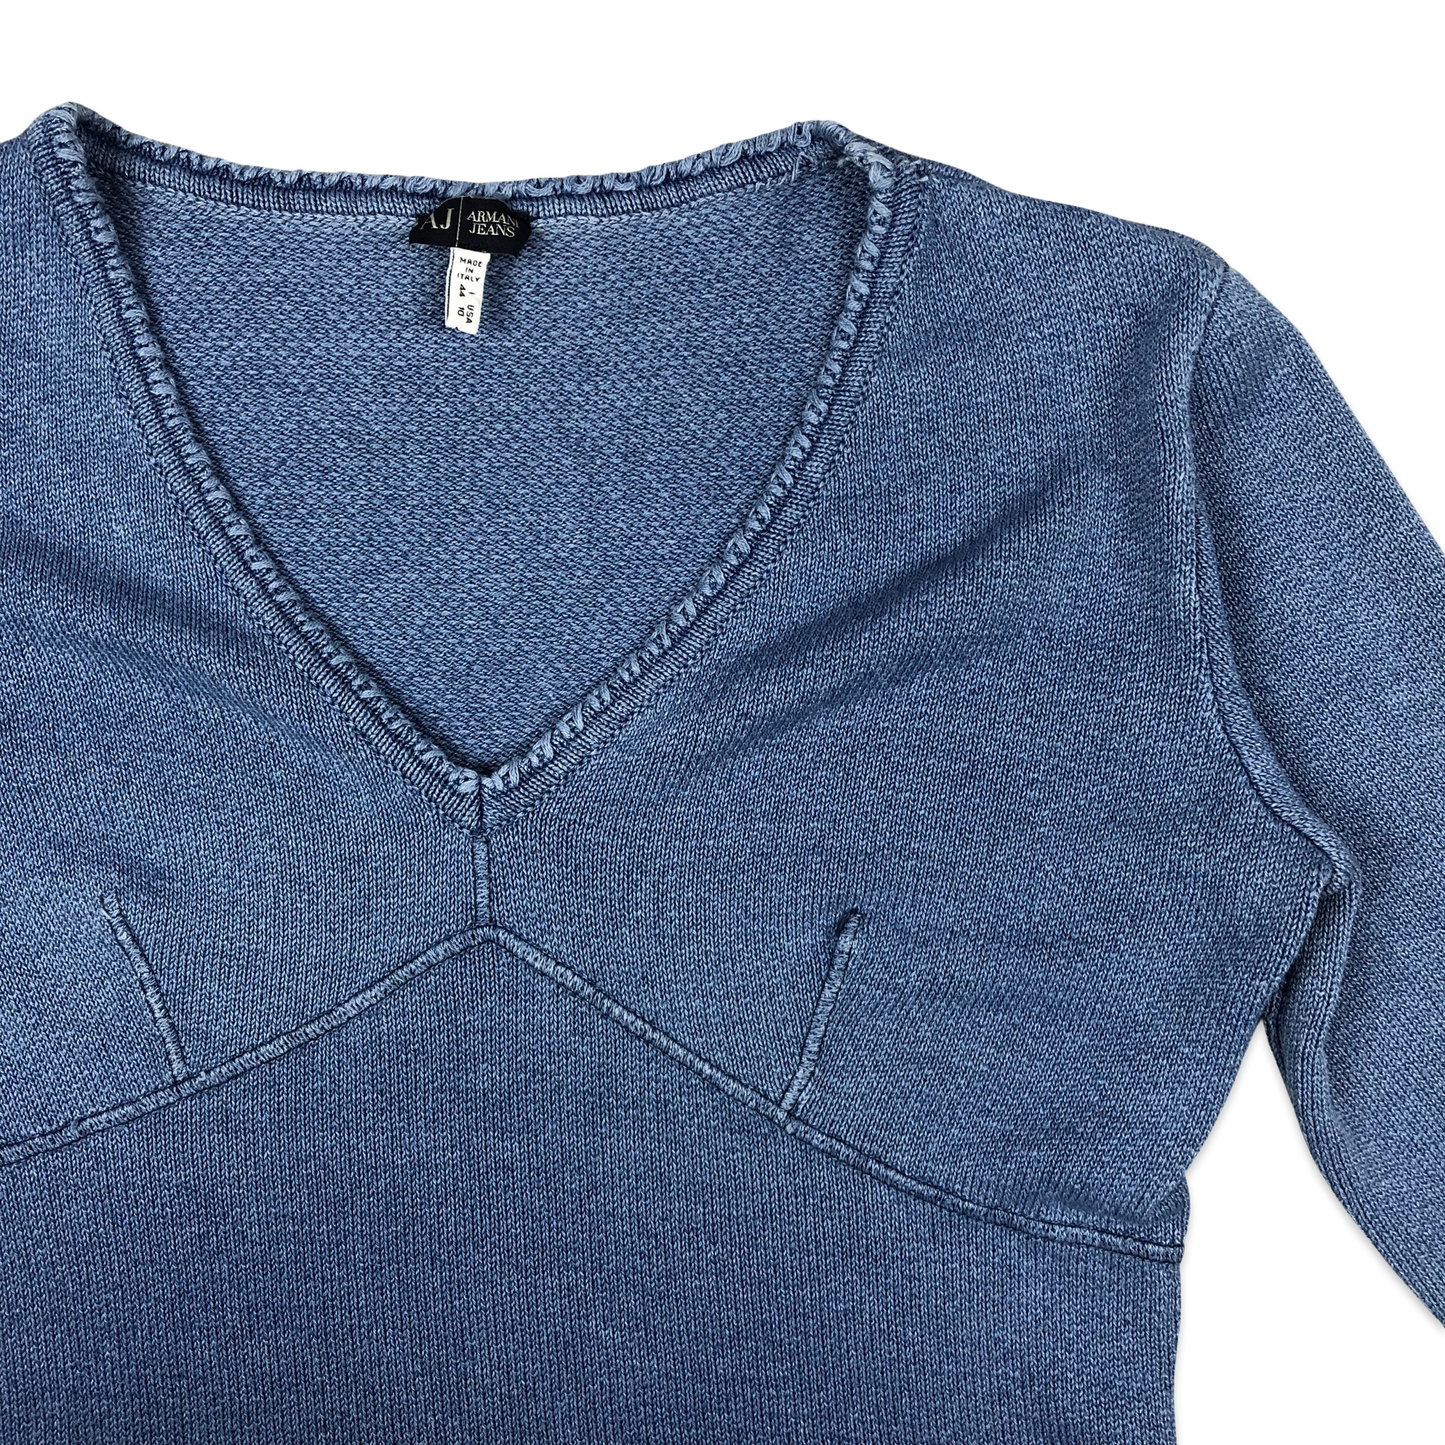 Armani Jeans Blue V Neck Knit Top 14 16